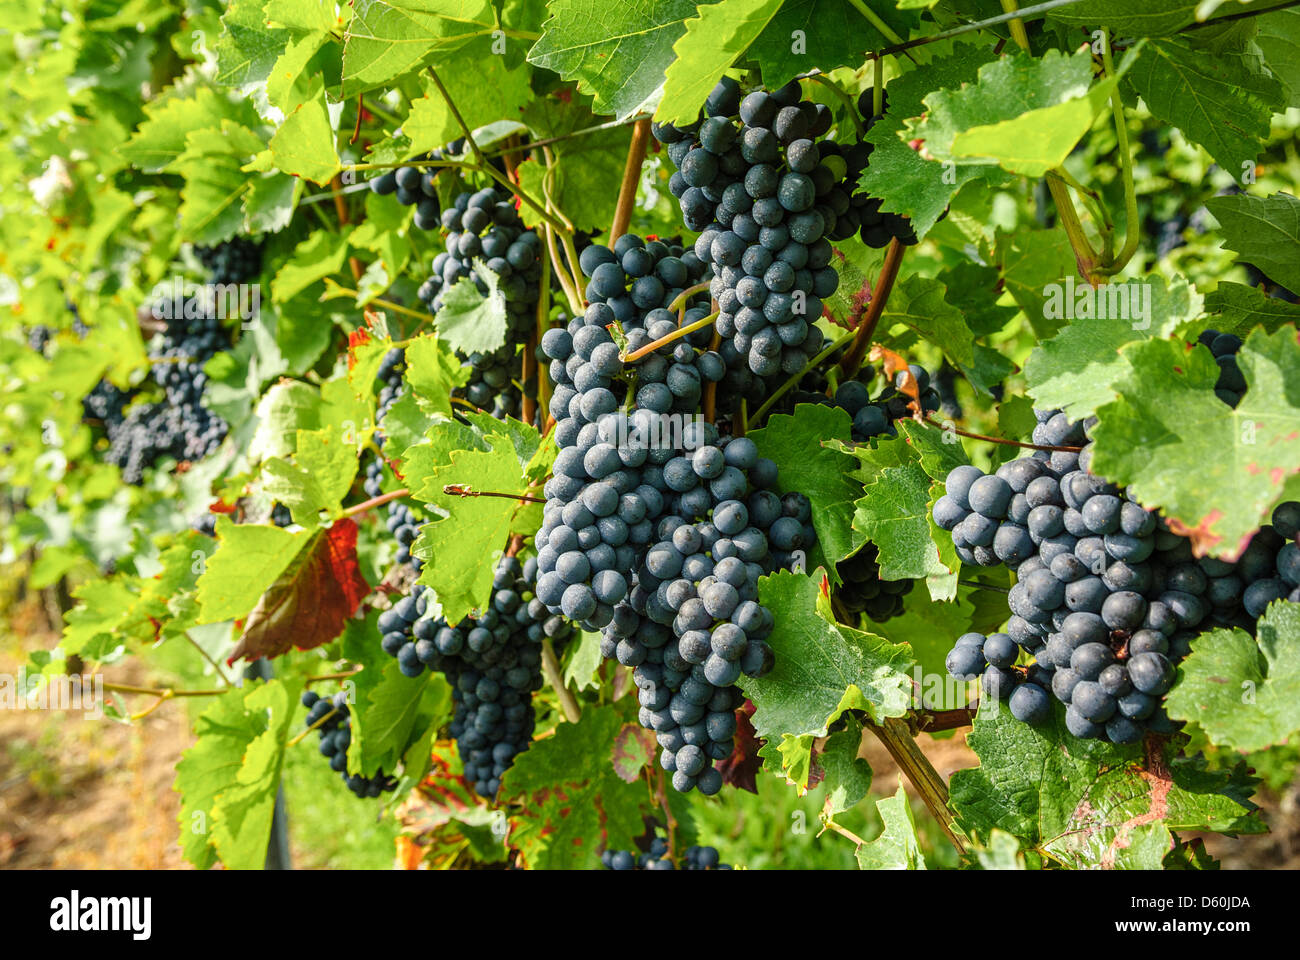 Black grapes on vine, vineyard, Rhineland-Palatinate, Germany, Europe Stock Photo